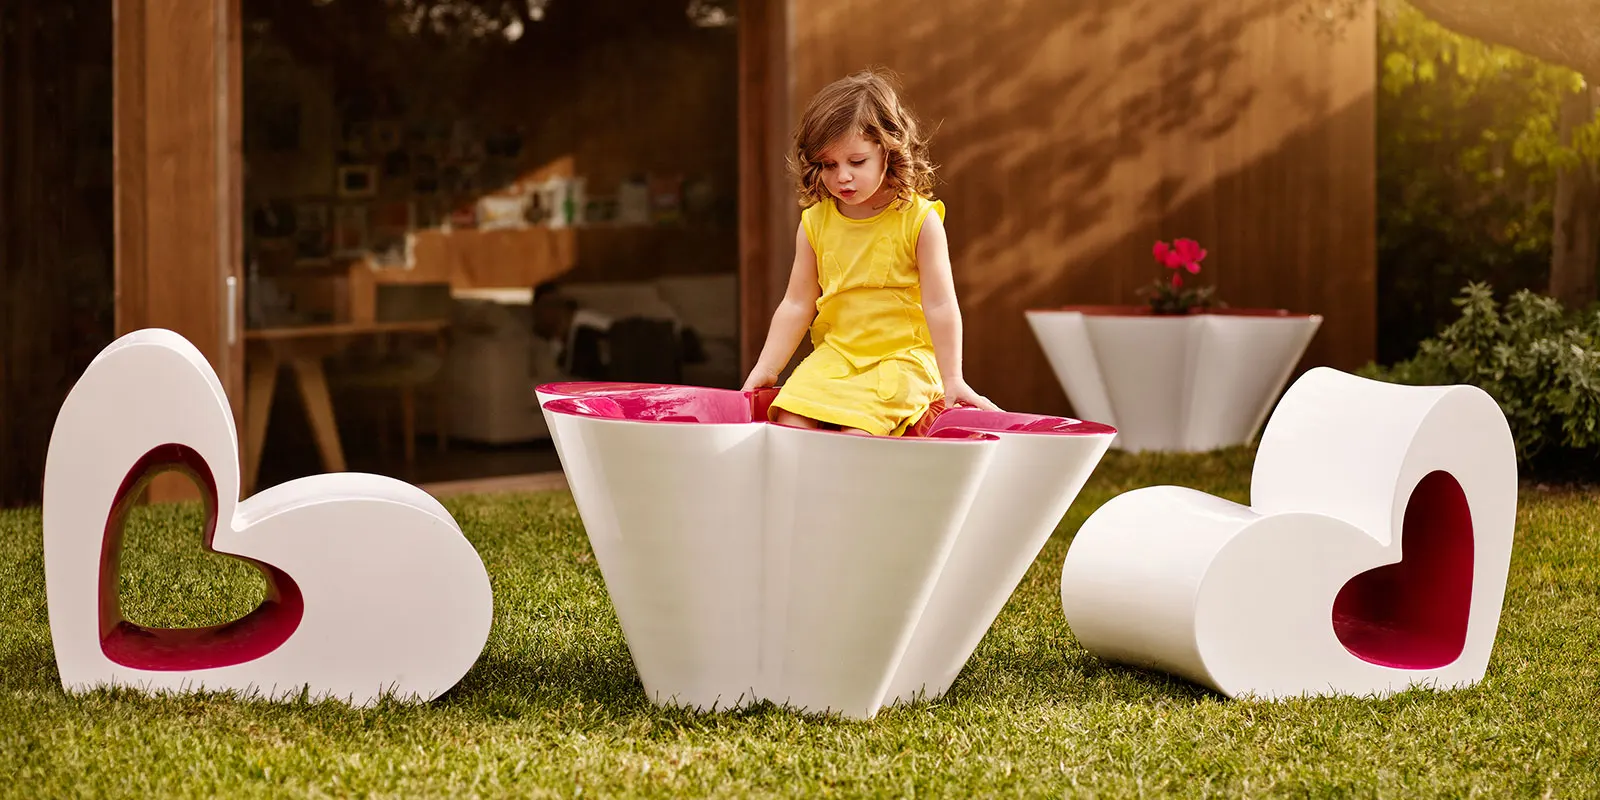 meubles-pour-enfants-jardin-dessin-chaise-potsdesign-agatharuizdelaprada-vondom-3 copie